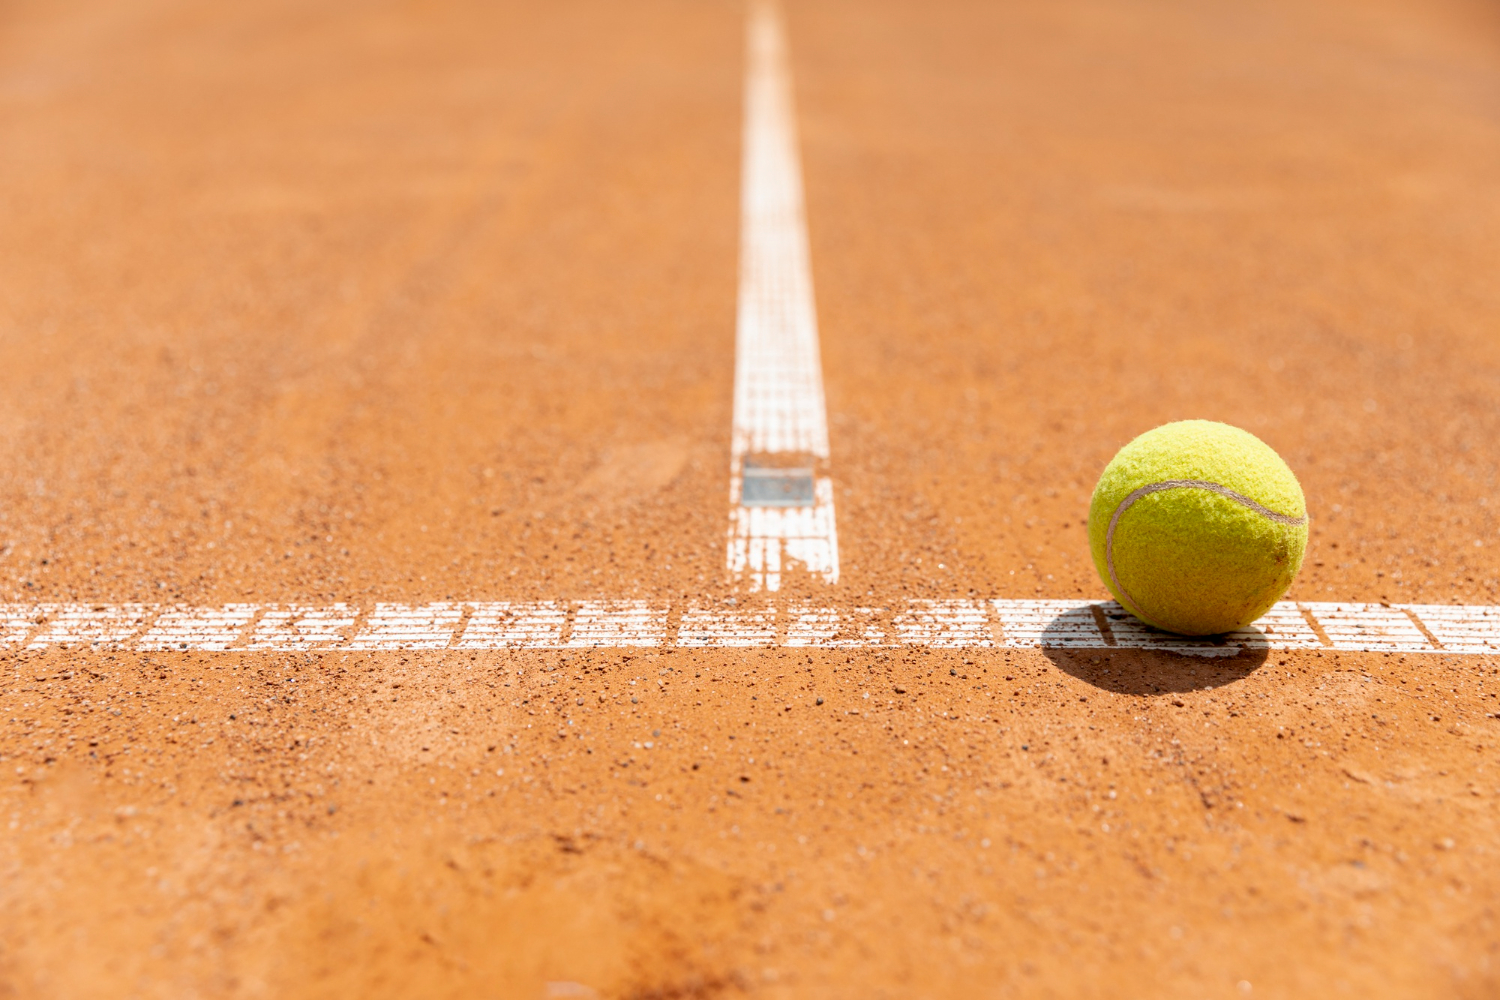 Explore os quatro tipos de quadras de tênis - It business fórum